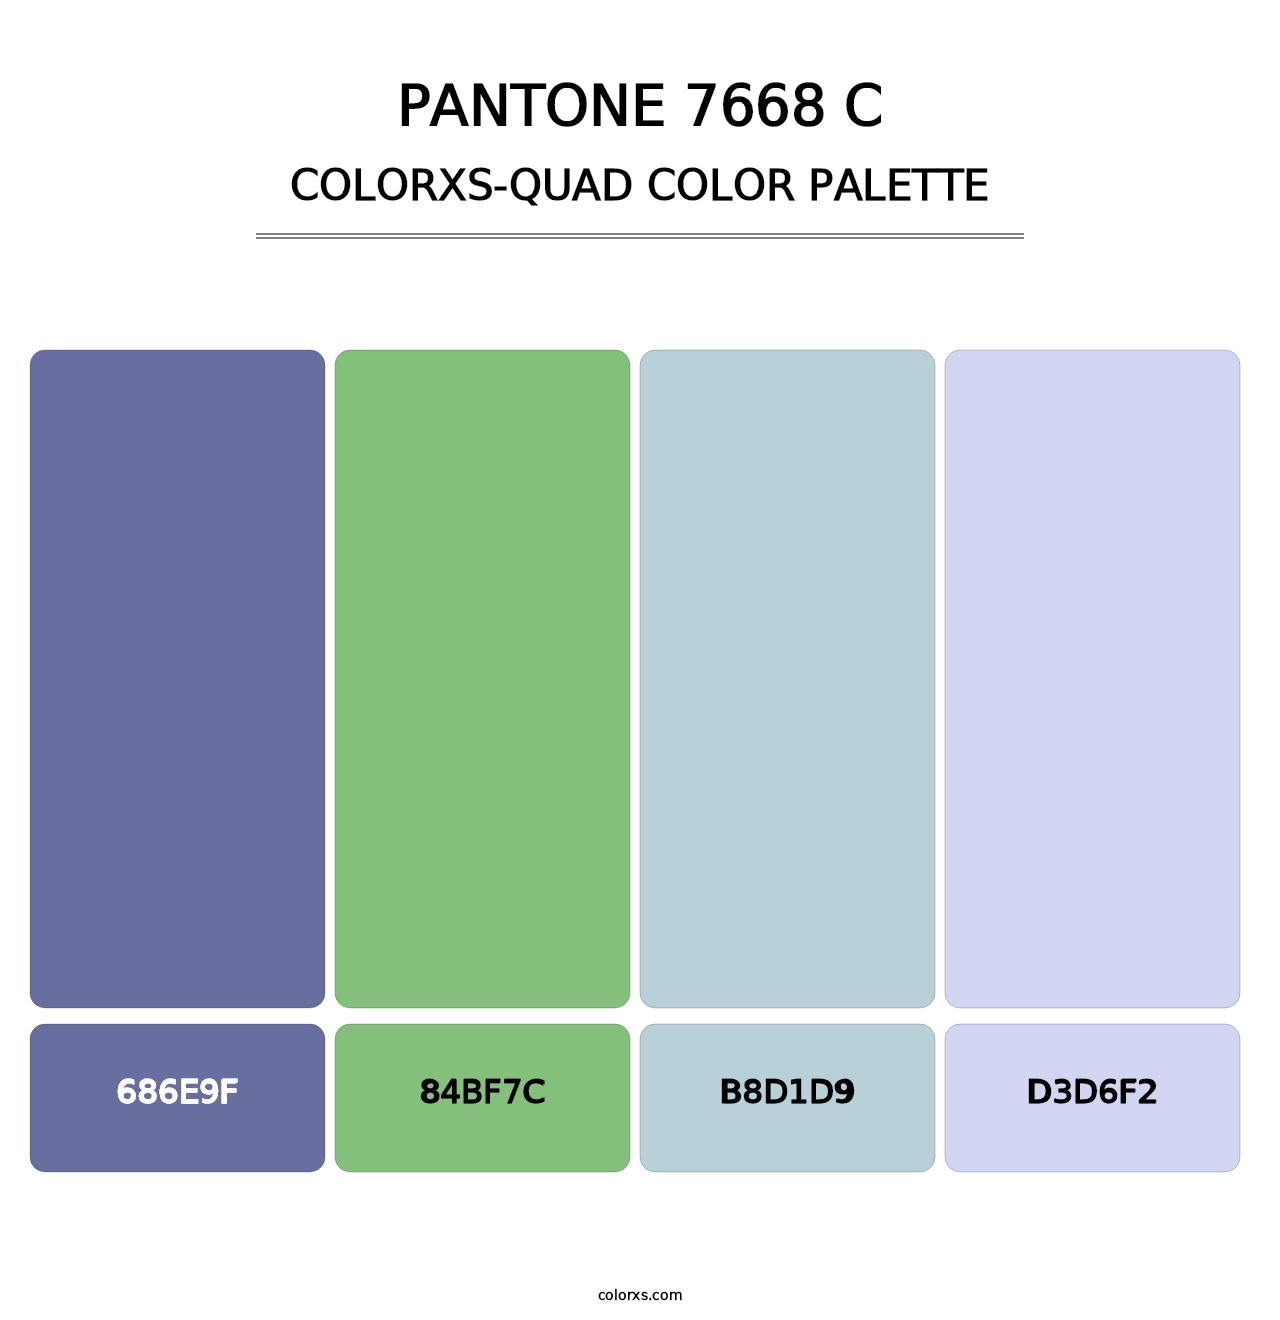 PANTONE 7668 C - Colorxs Quad Palette